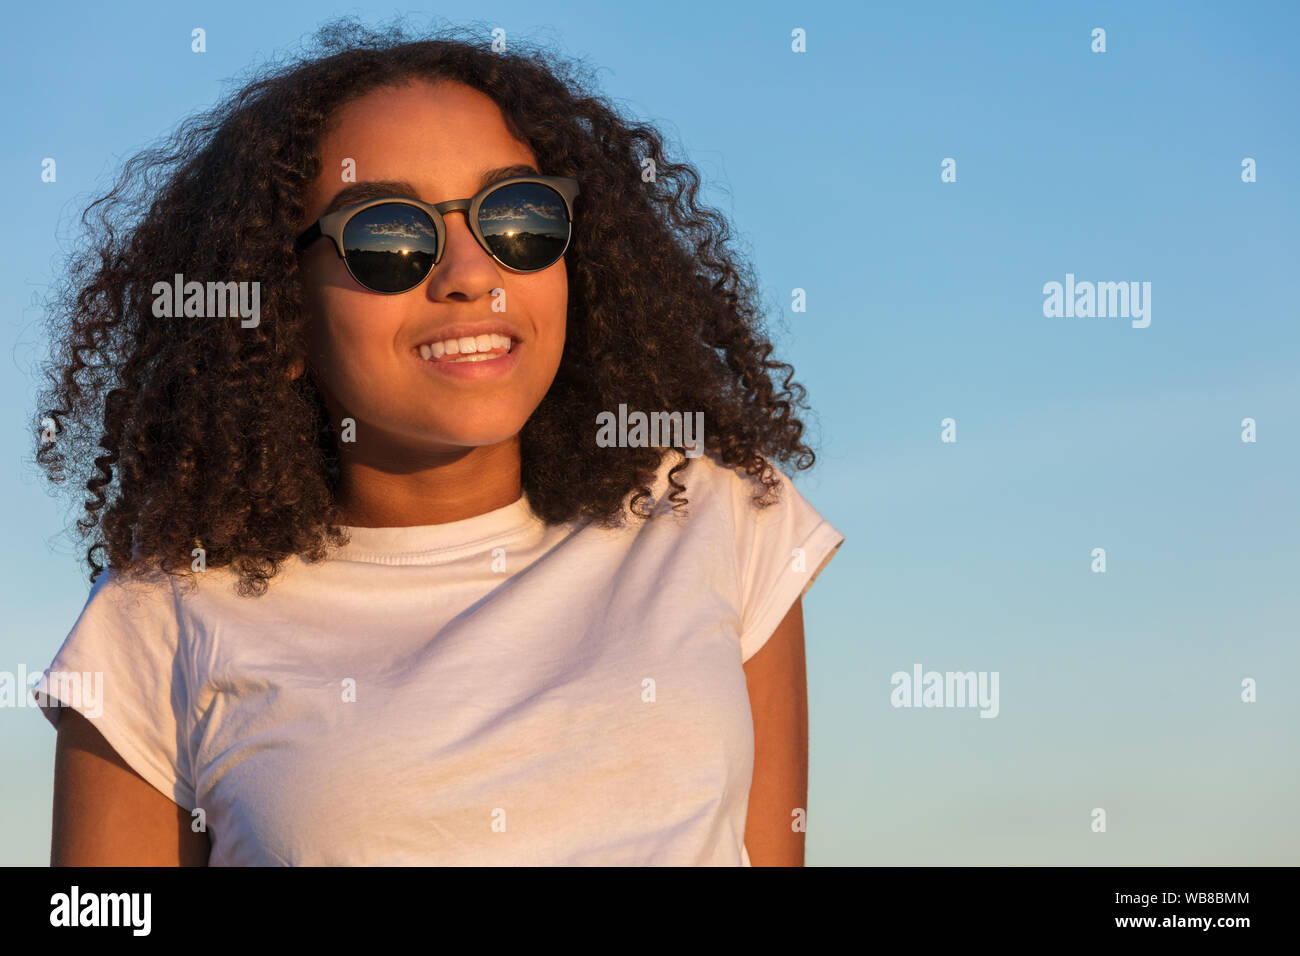 Razza mista biracial americano africano ragazza adolescente femmine giovane donna con denti perfetti al tramonto o l'alba indossando occhiali da sole Foto Stock